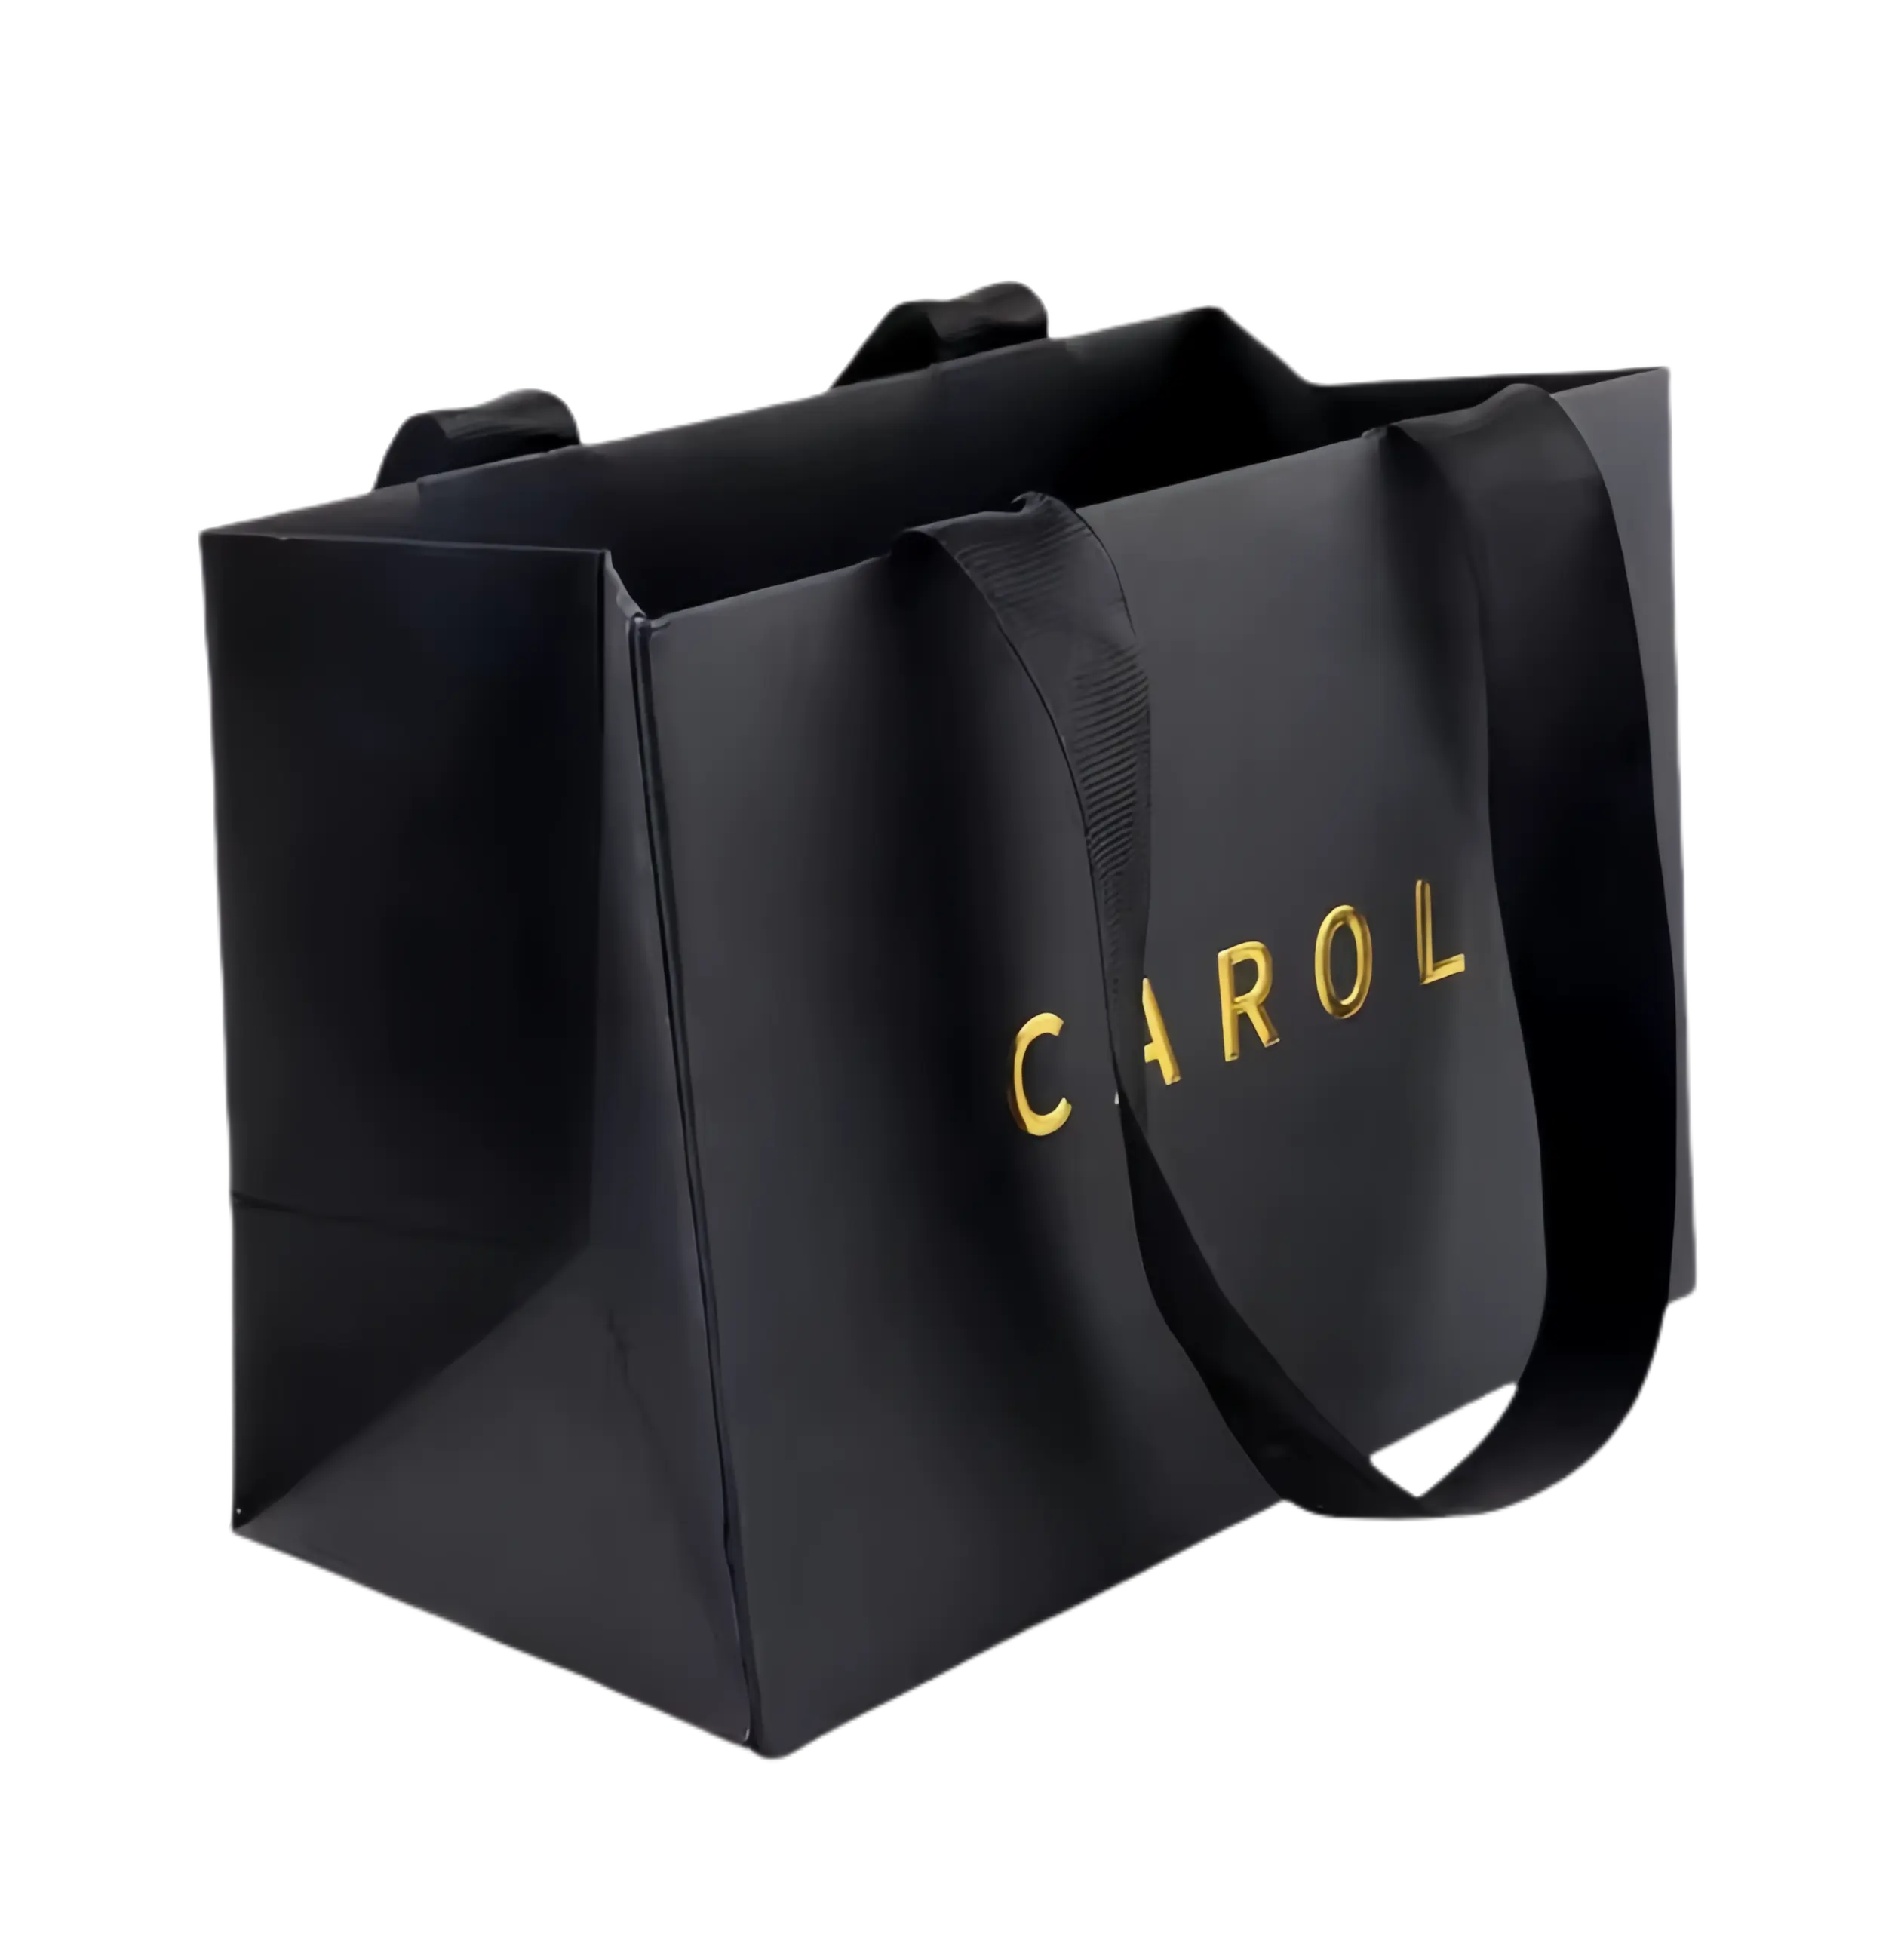 Großhandel benutzerdefinierte hochwertige gedruckte schwarze luxuriöse einkaufen-geschenk-papiertüte mit ihrem eigenen logo